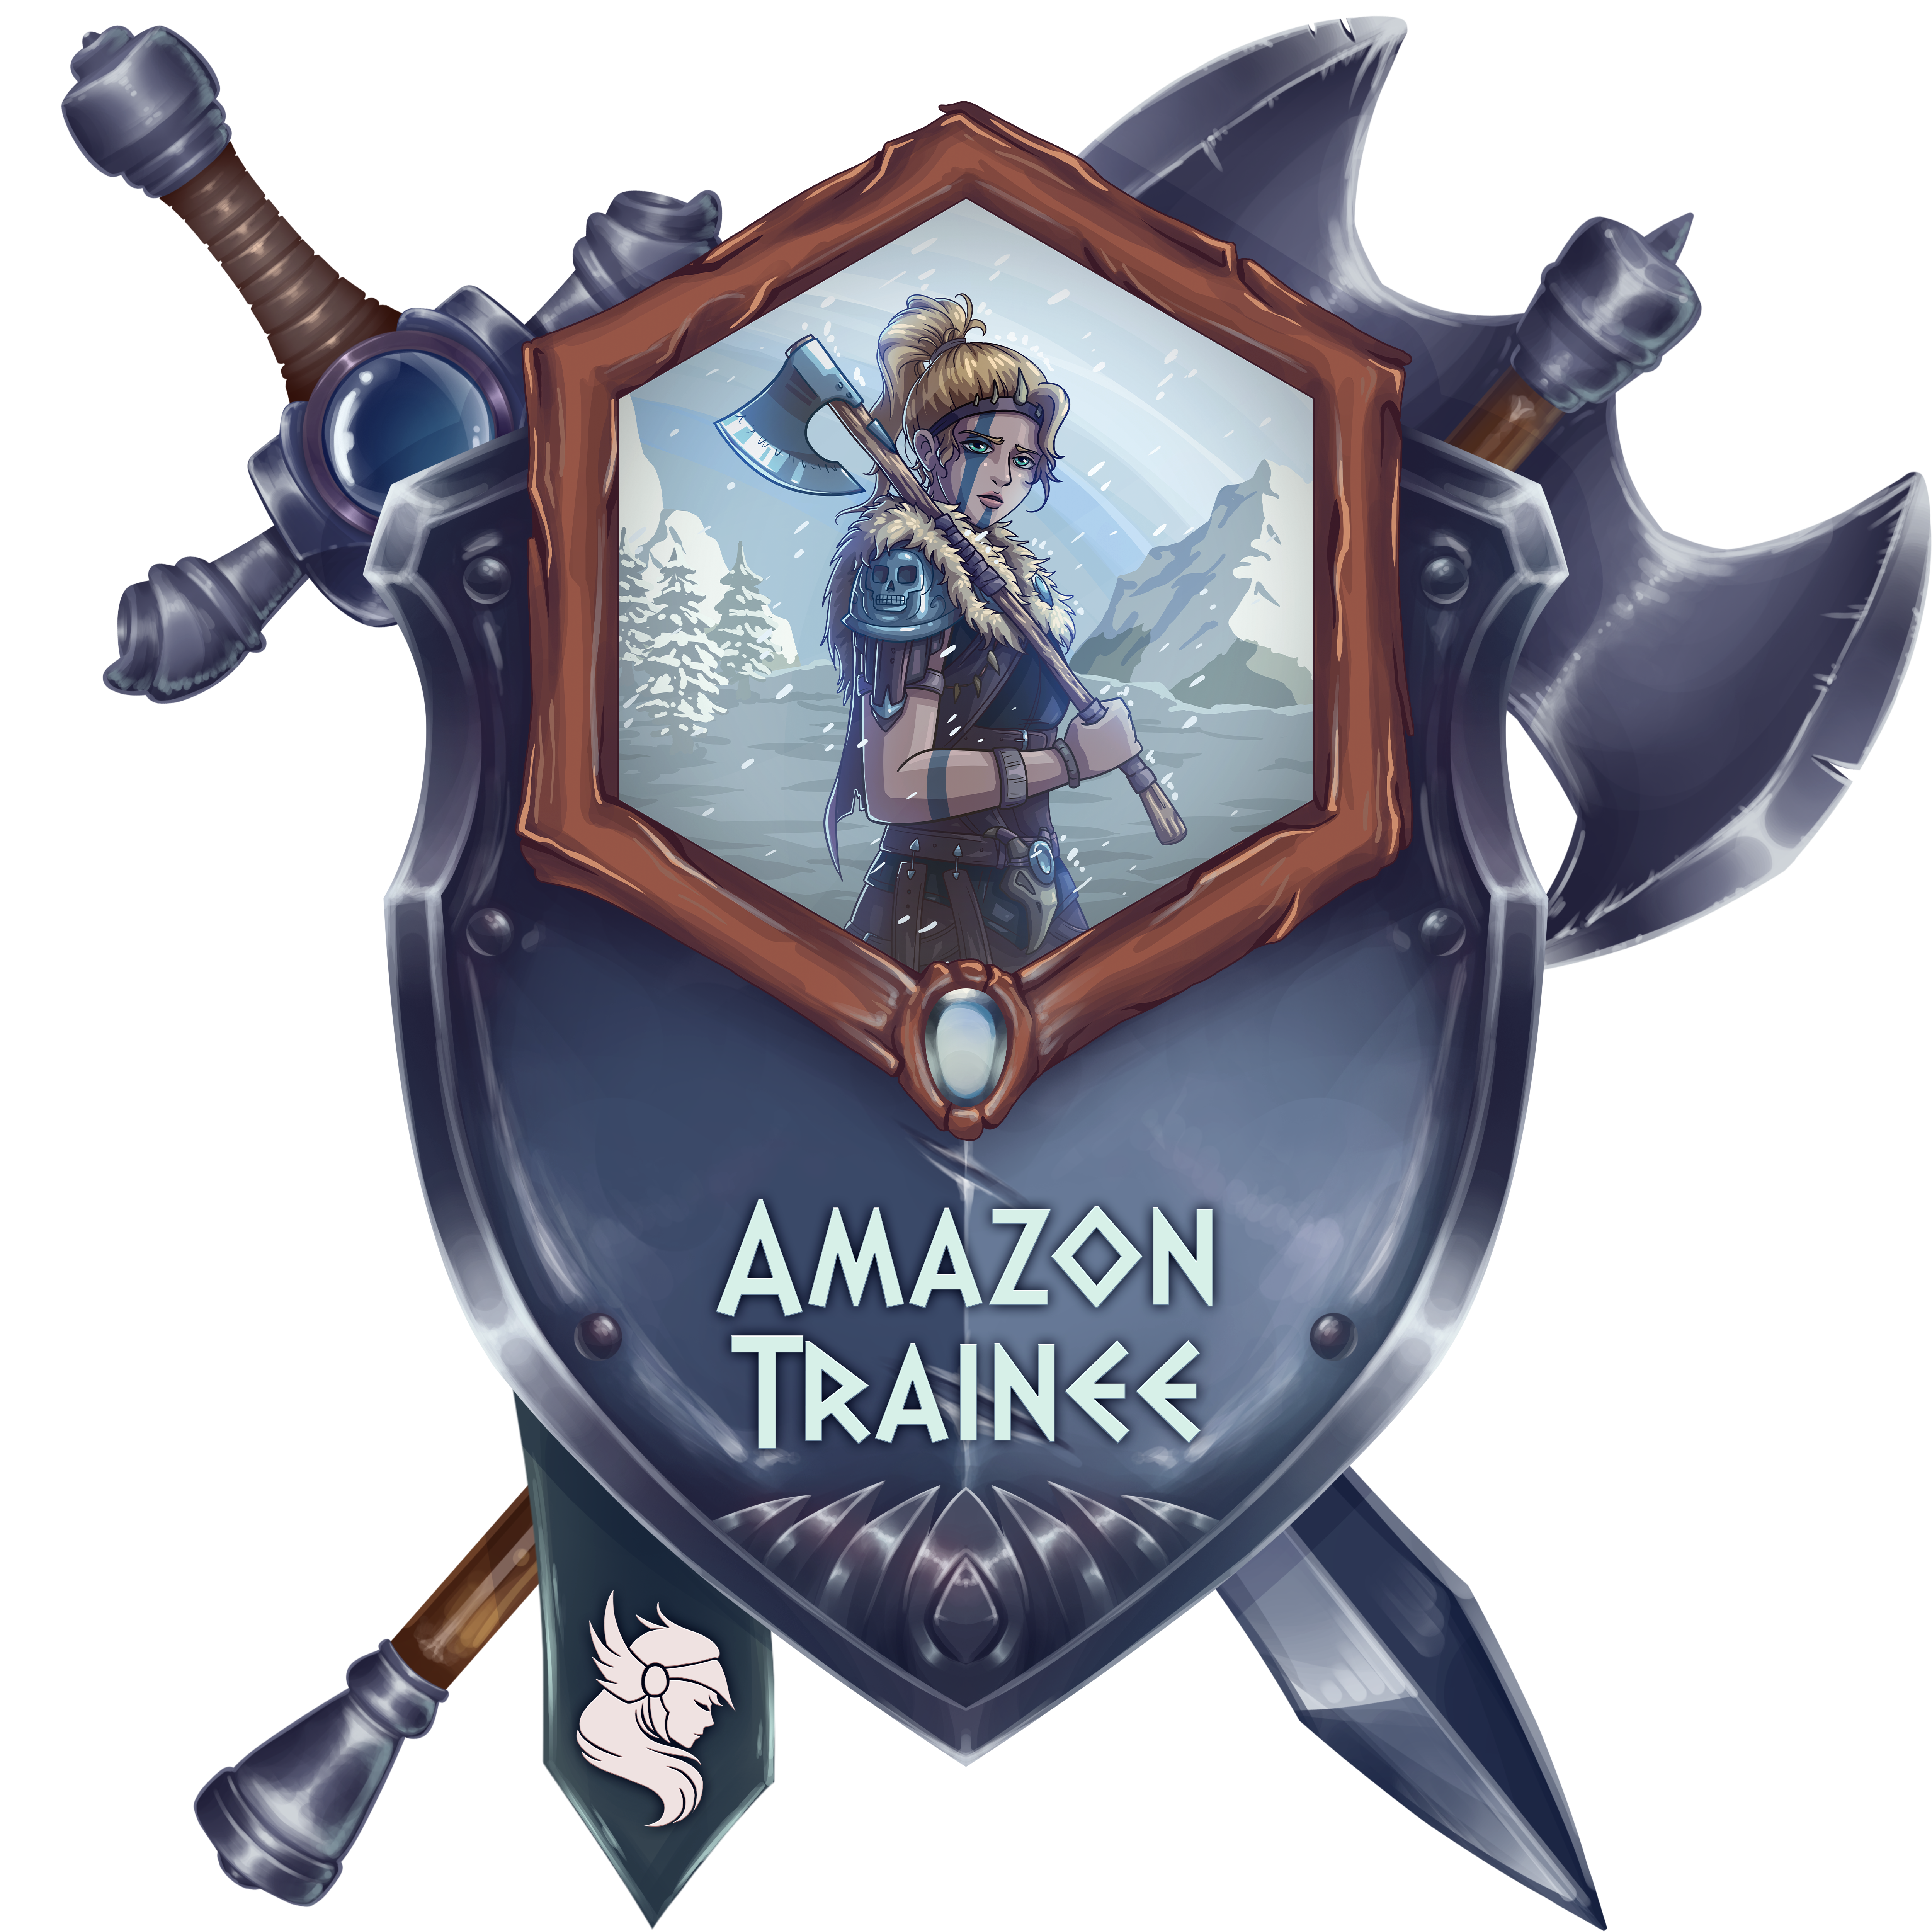 Amazon Trainee